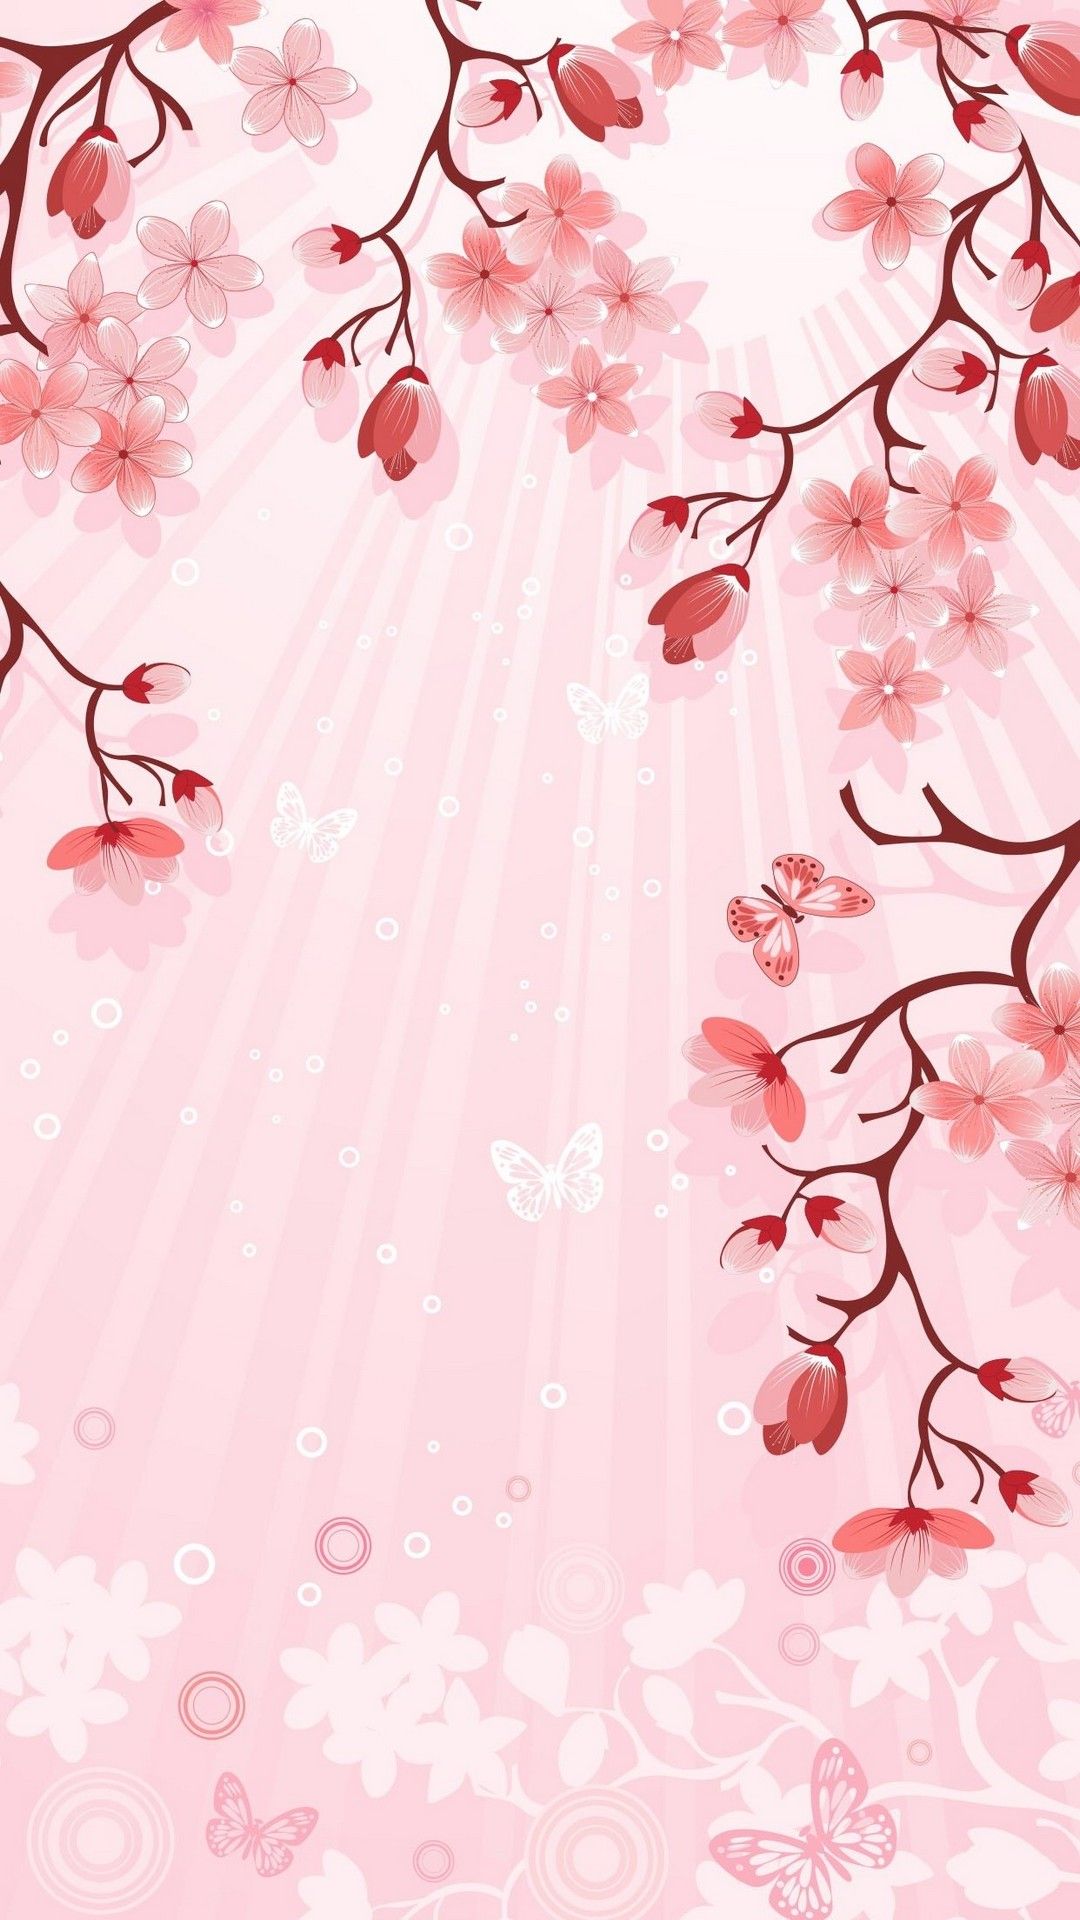 Cute Pink Flower Wallpapers